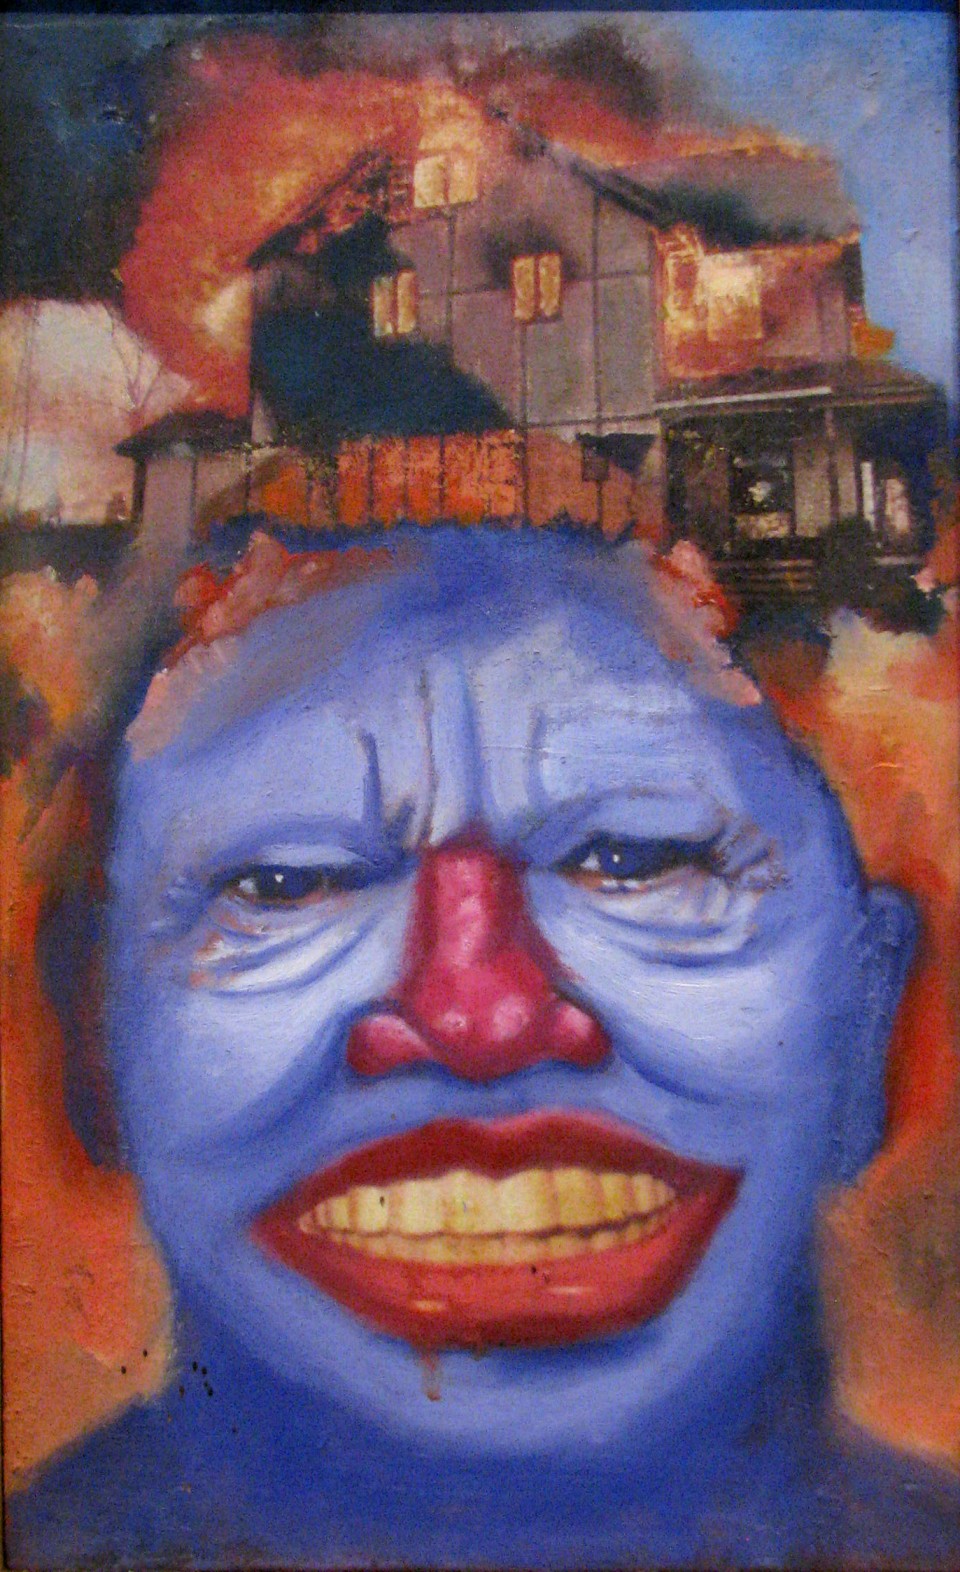 Brain Burn, Self Portrait 1998,
Acrylic and Oil on Canvas